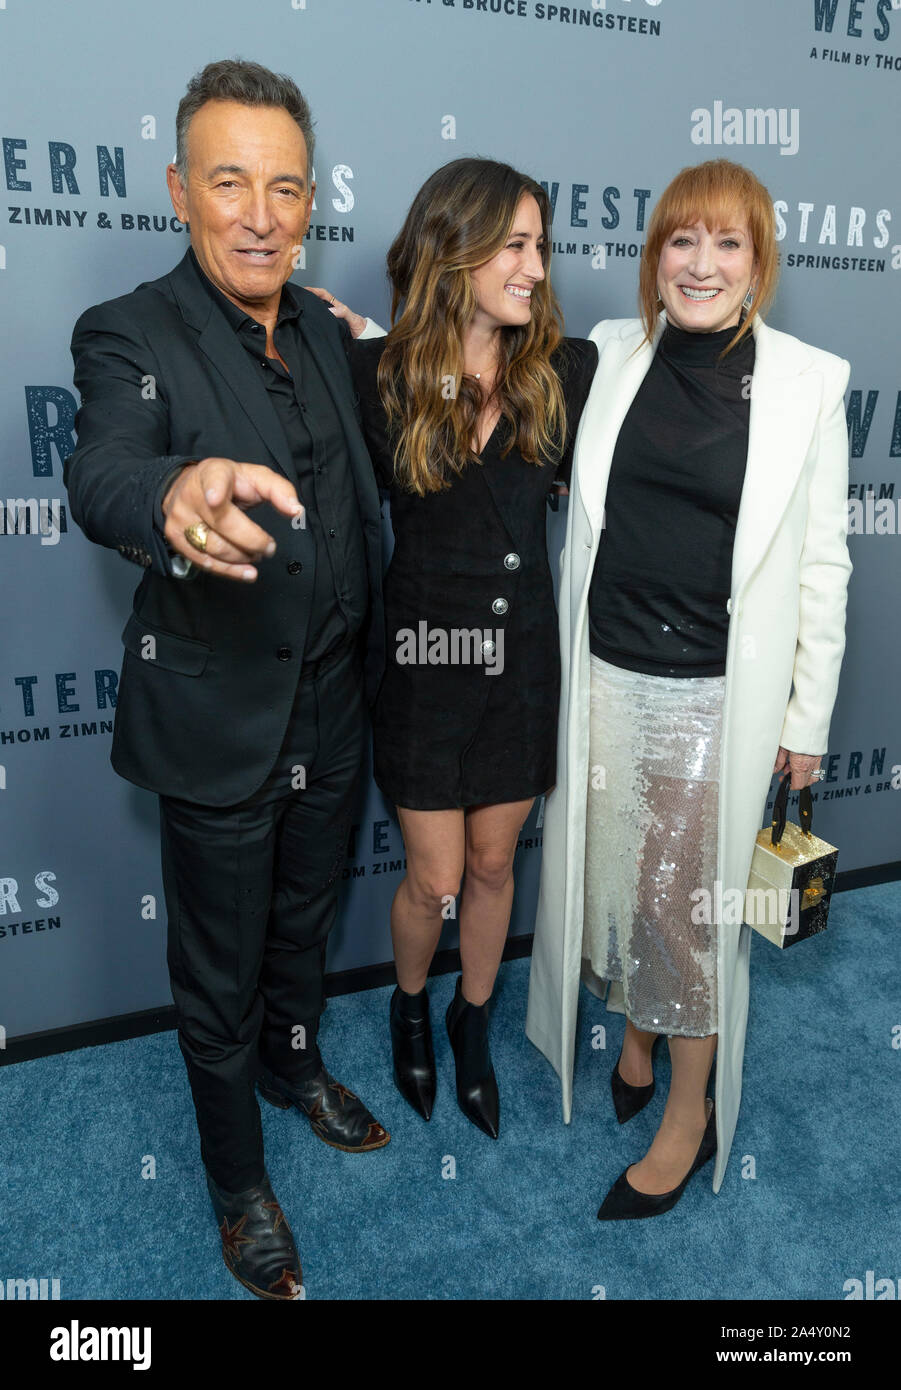 New York, NY - 16 octobre 2019 : Bruce Springsteen, Jessica Springsteen Patti Scialfa et assister à la projection spéciale de New York d'étoiles de l'Ouest à Metrograph Banque D'Images